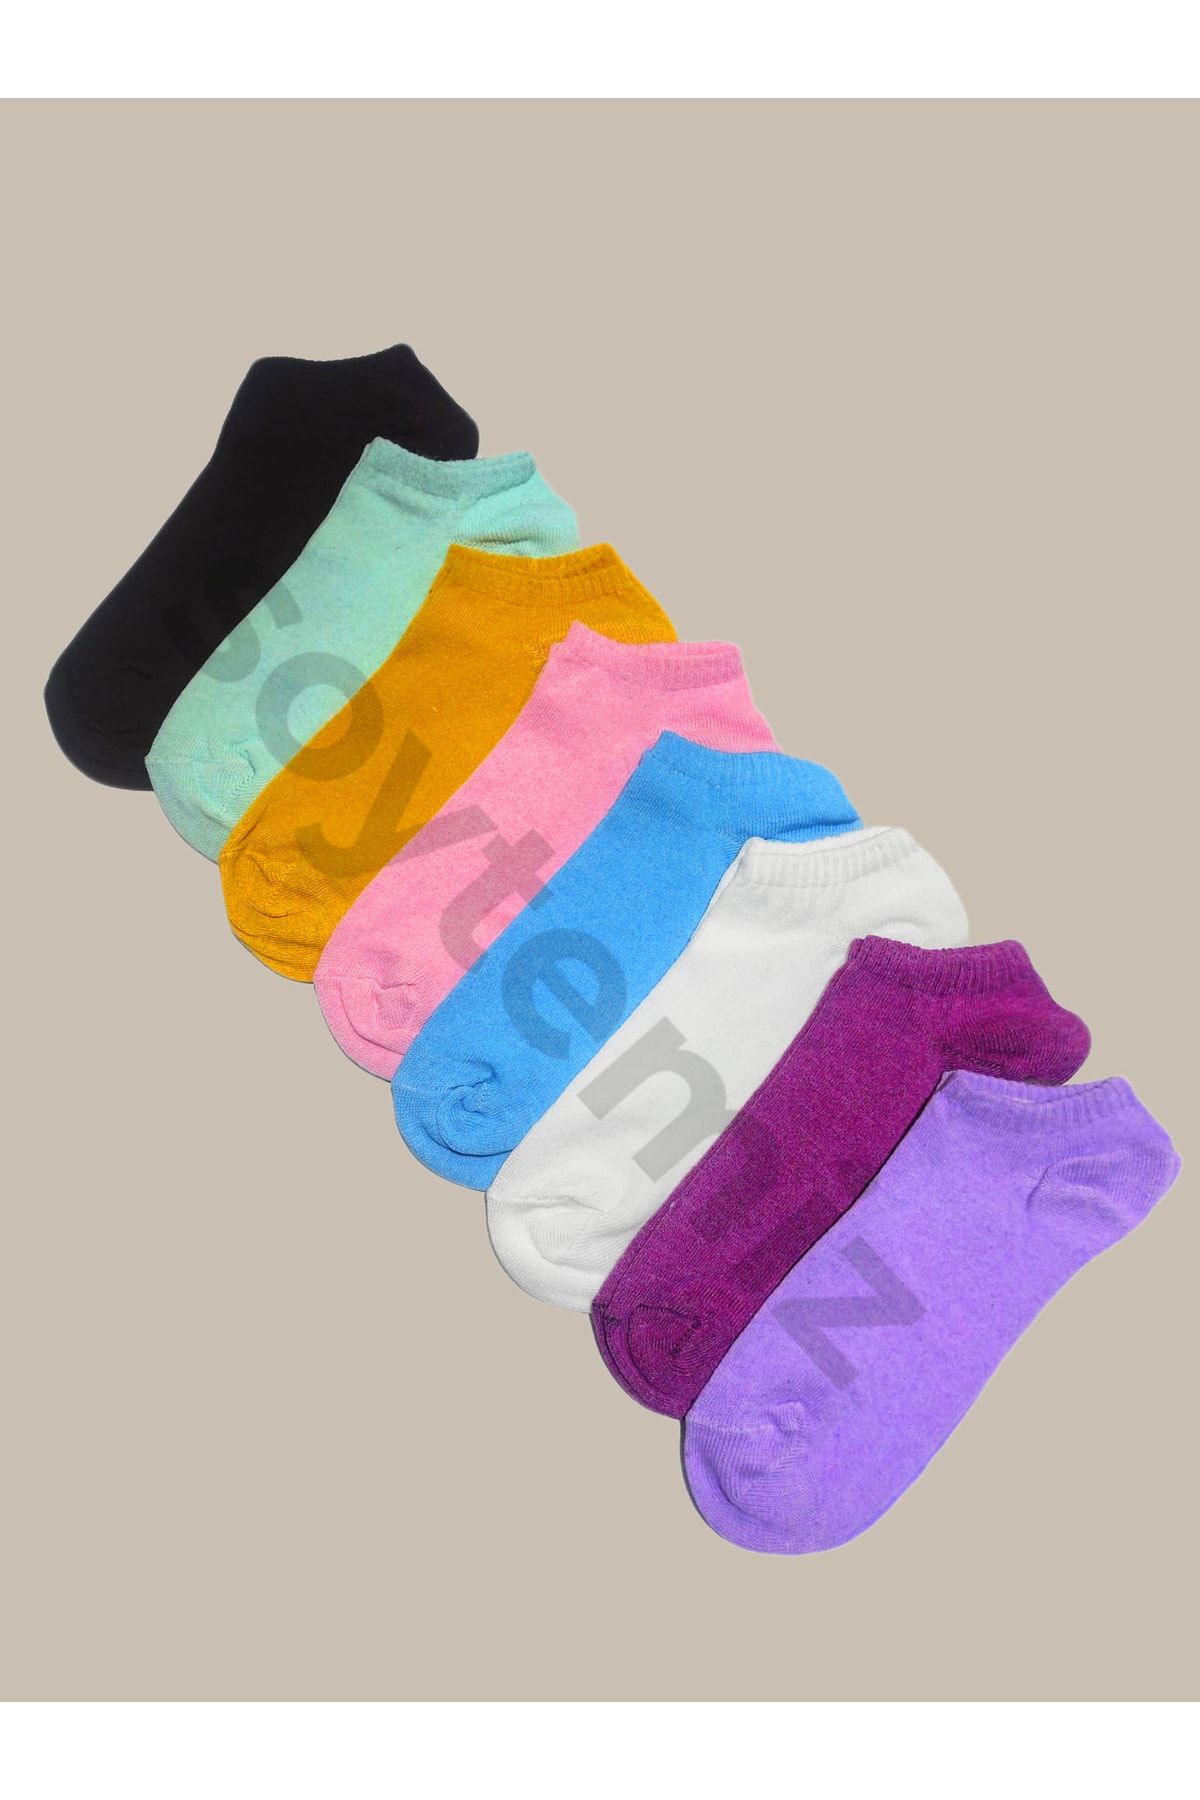 SOYTEMİZ 8 Çift Koton Karışık Renk Kadın Patik Çorap(357-51)